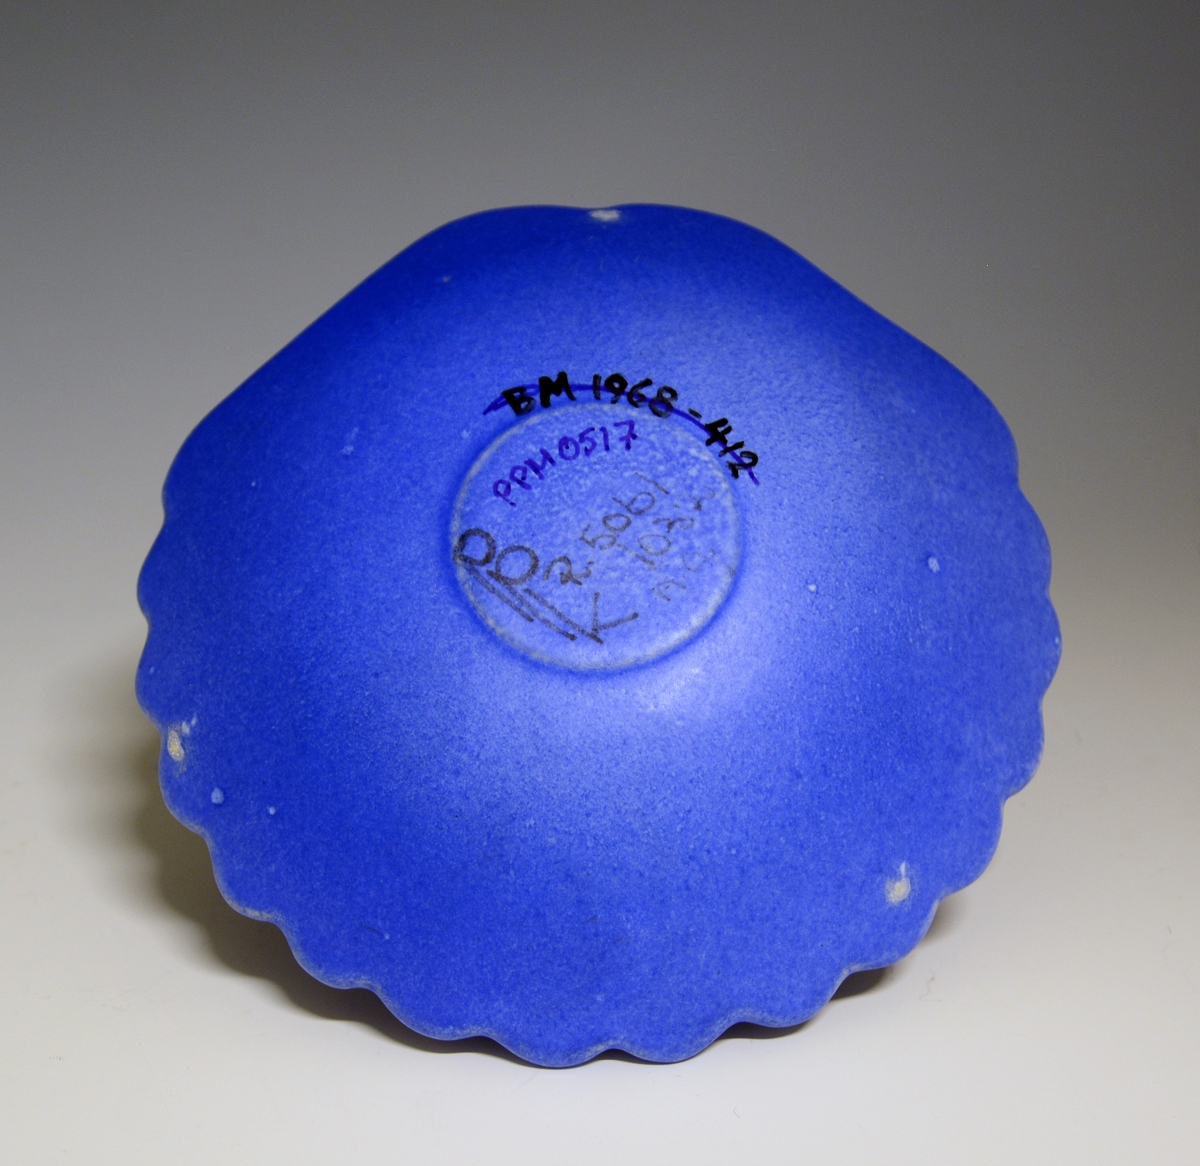 Prot: Skål av "keramikk" formet som et skjell. Blå glasur.

Modell: 5061 
Dekor: 1032